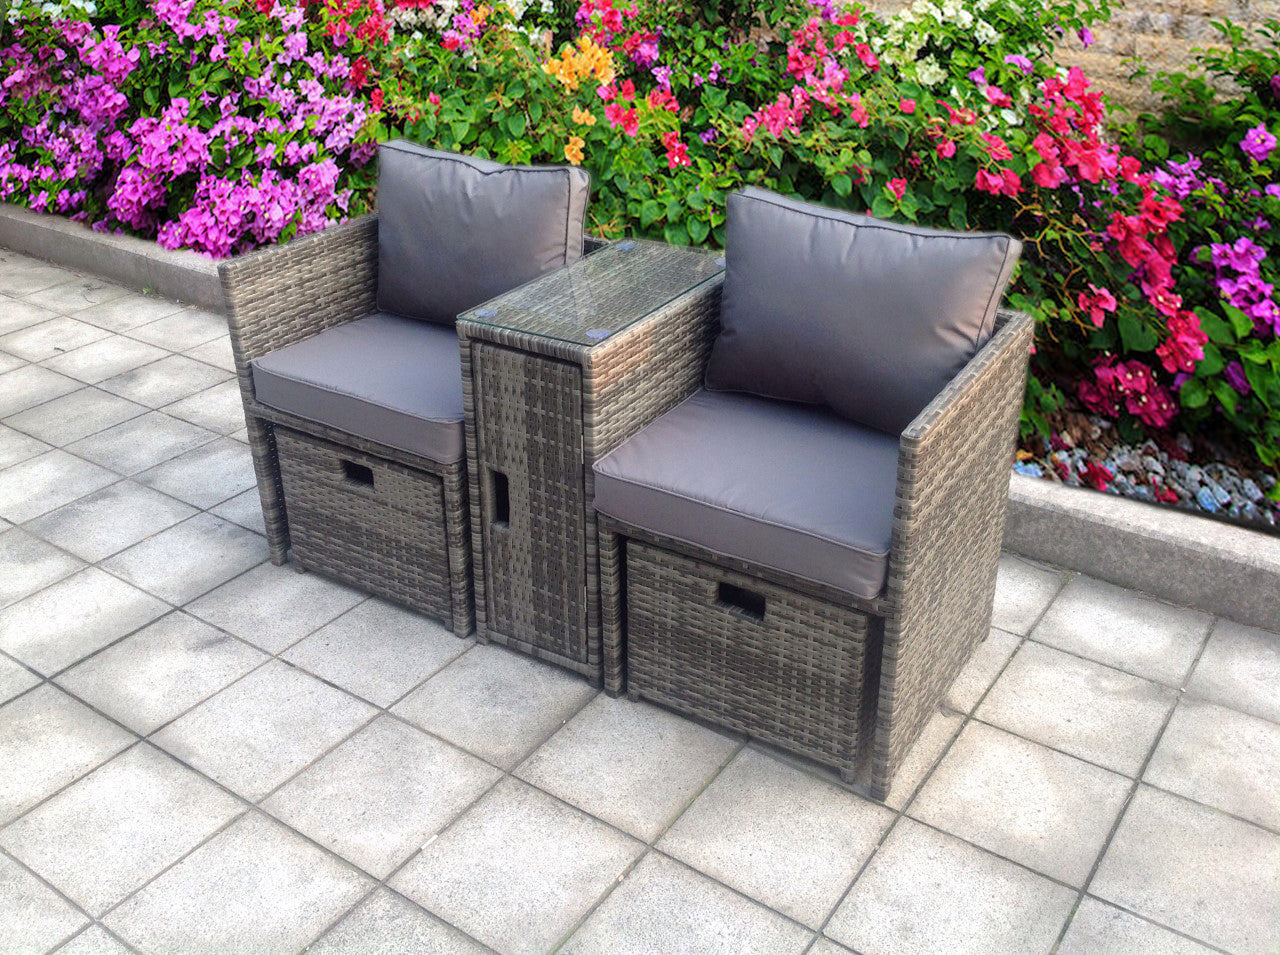 Quality Rattan Garden Furniture Sale : Best garden furniture sales